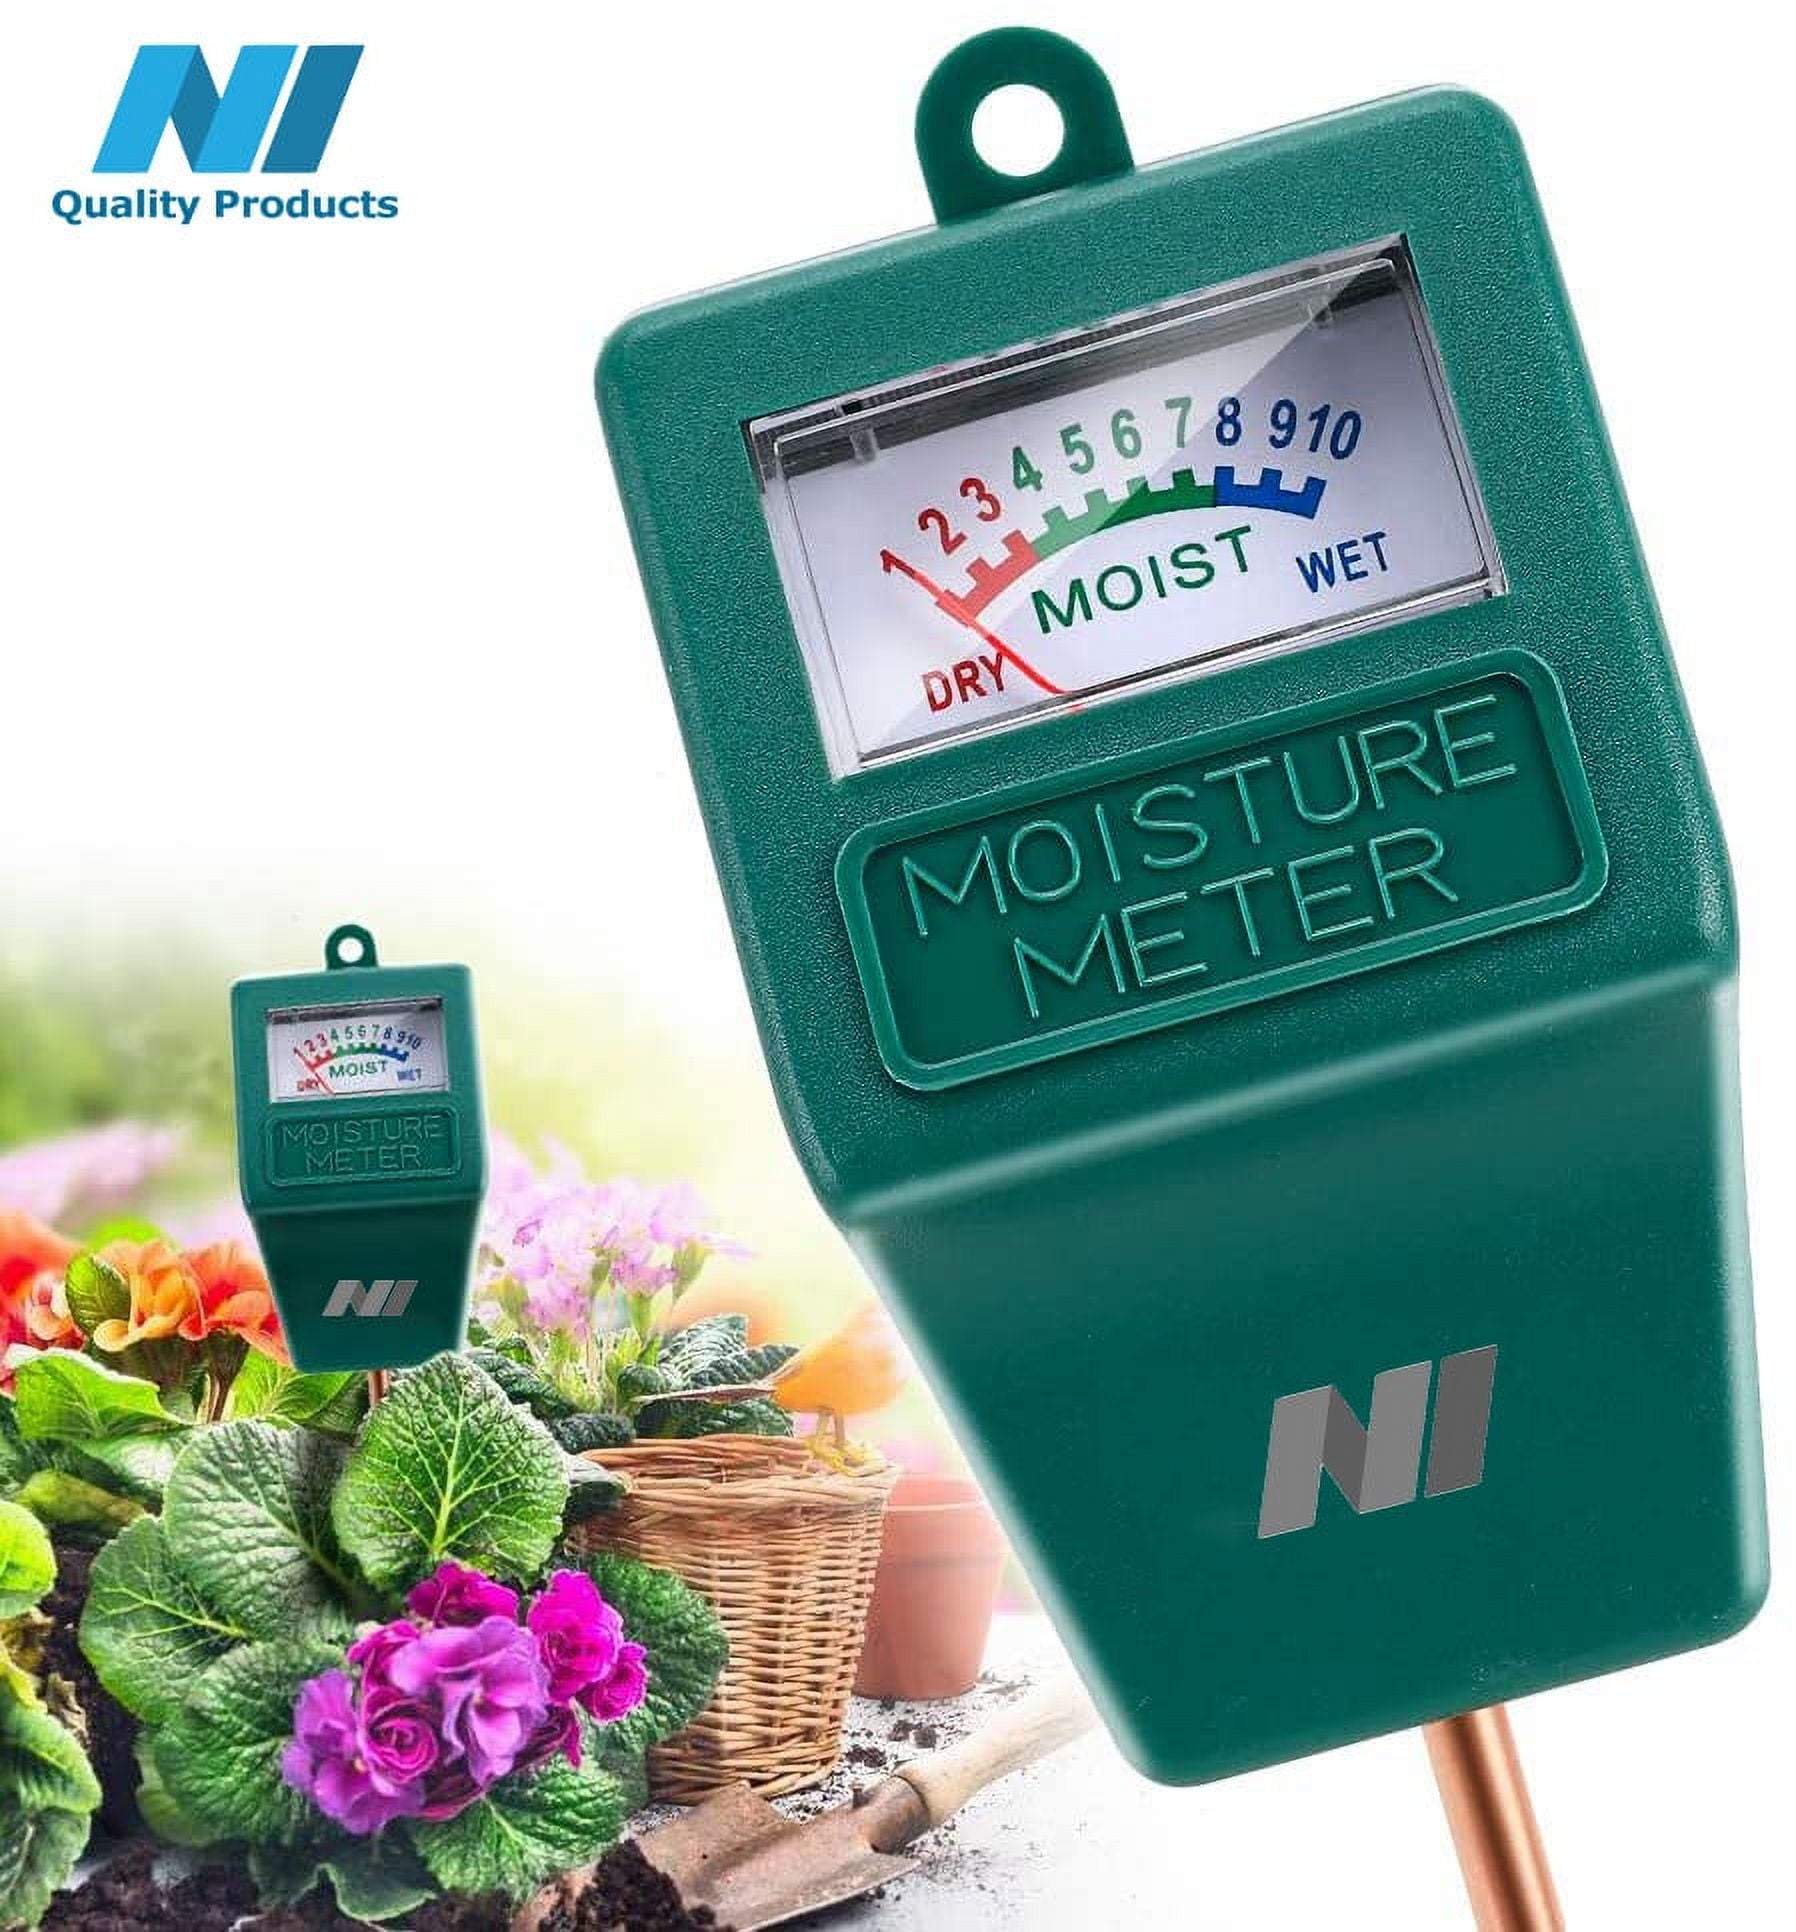 Hiltex 61127 Soil Moisture Meter, 2 Pack, 11” Soil Probe, Plant Water Meter for House Plants, Soil Tester for Plant Care, Wet/Dry Soil Test Kit